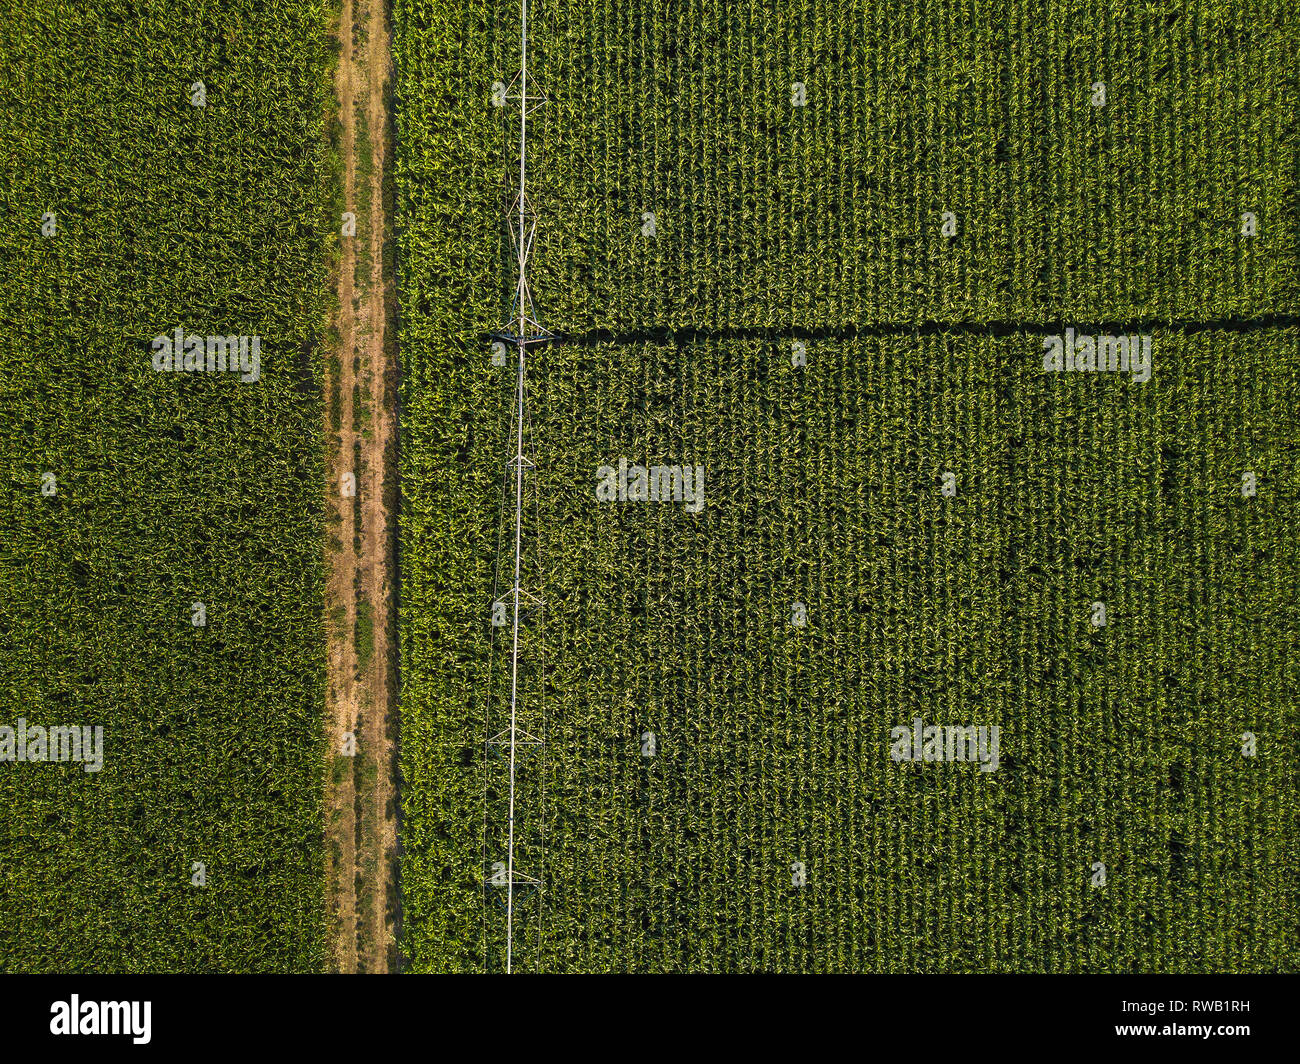 Drone photographie, vue aérienne de l'eau Système d'irrigation dans un champ cultivé, vue du dessus Banque D'Images